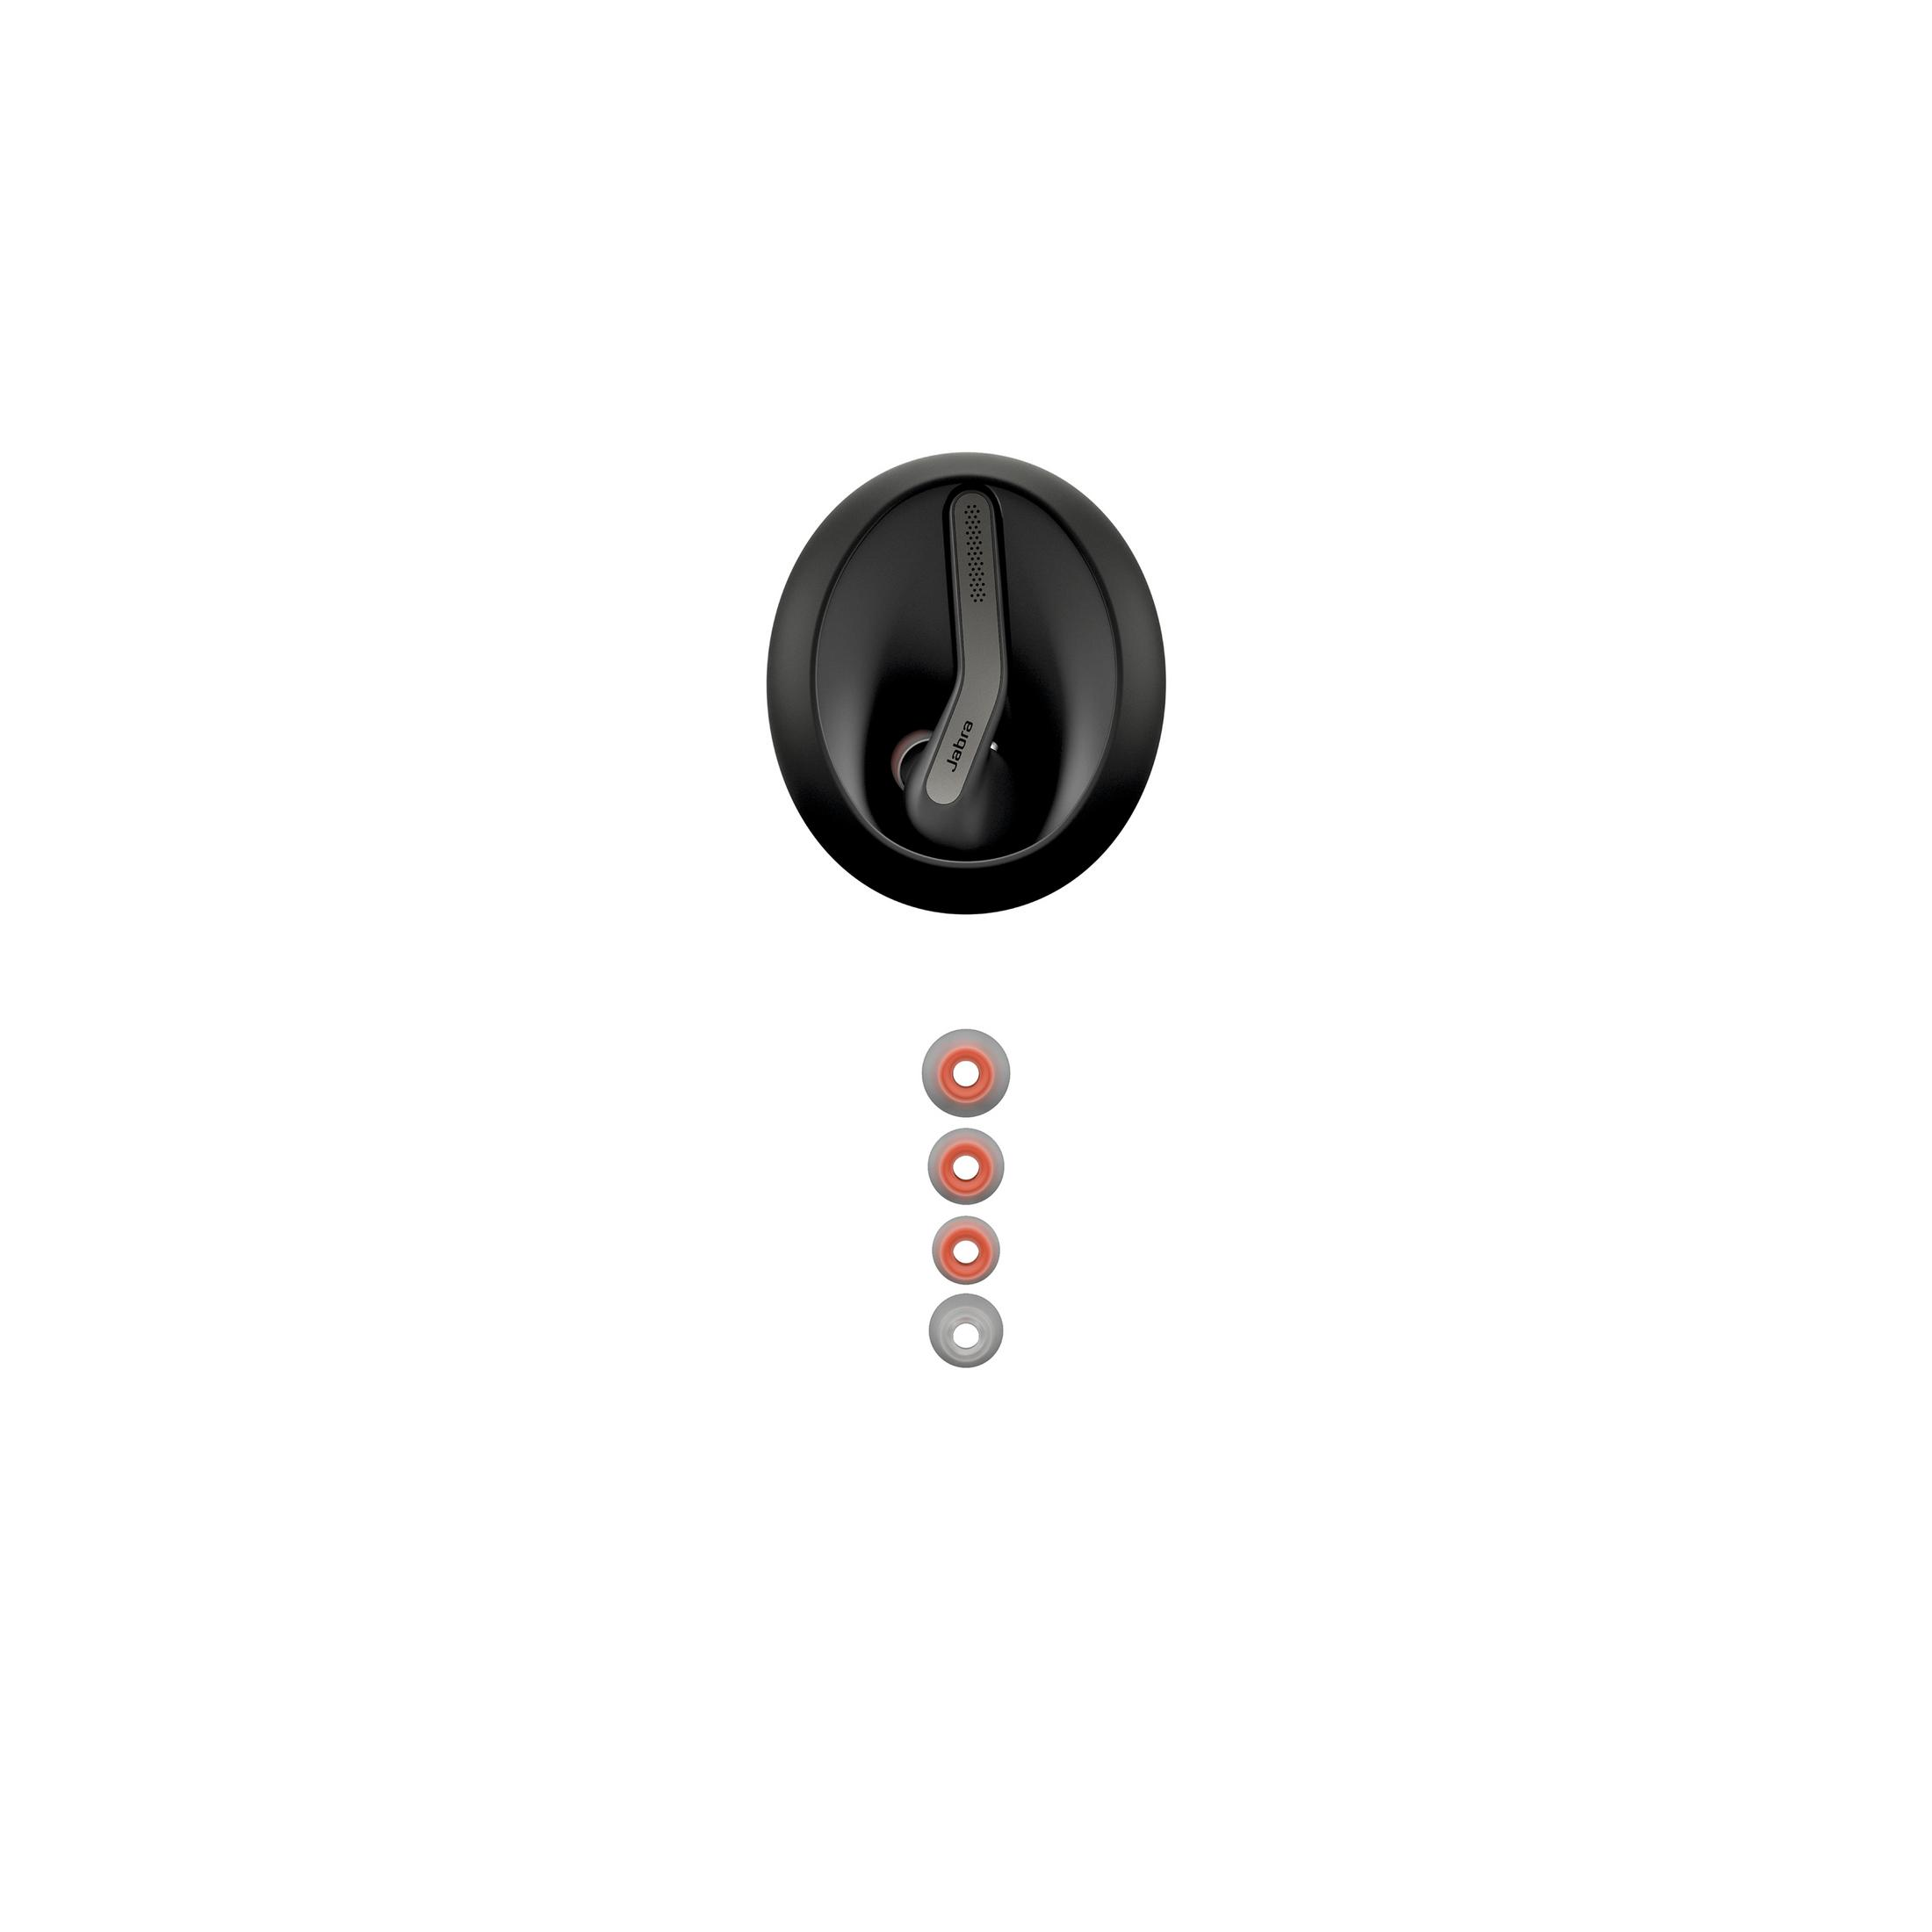 55 In-ear Headset Schwarz JABRA TALK Bluetooth BK, 100-98200900-60